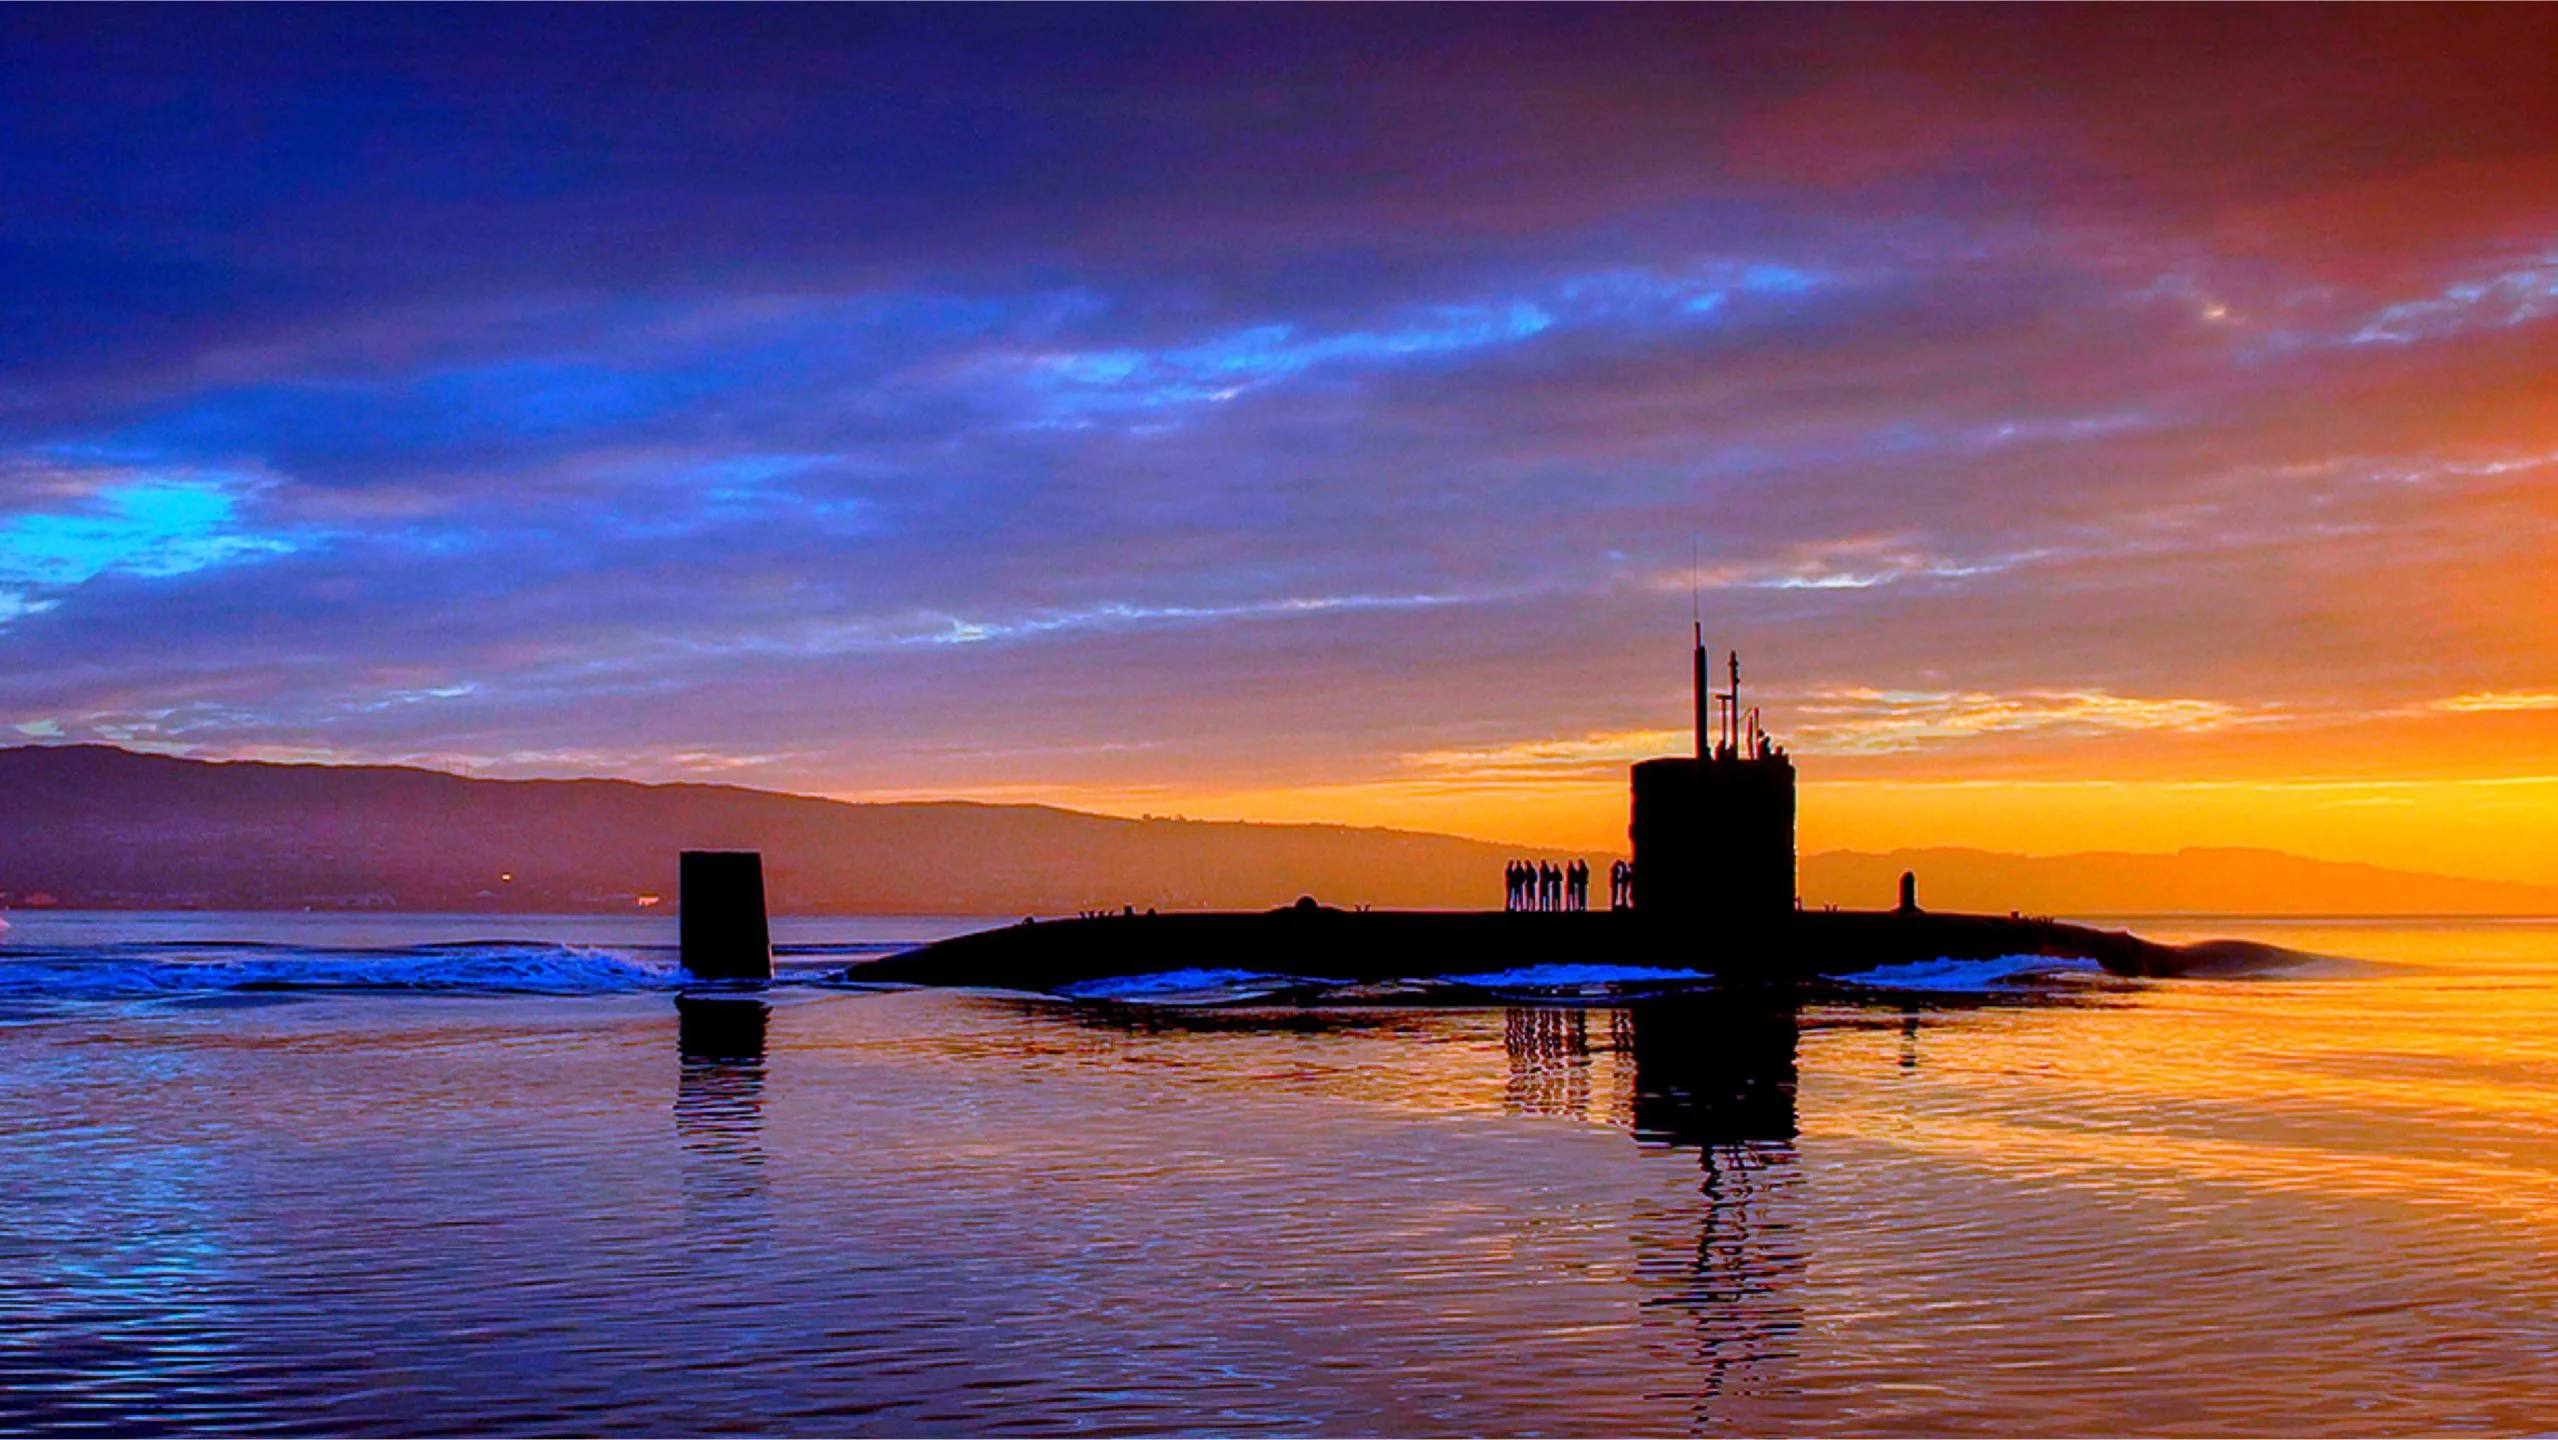 Submarine sunset